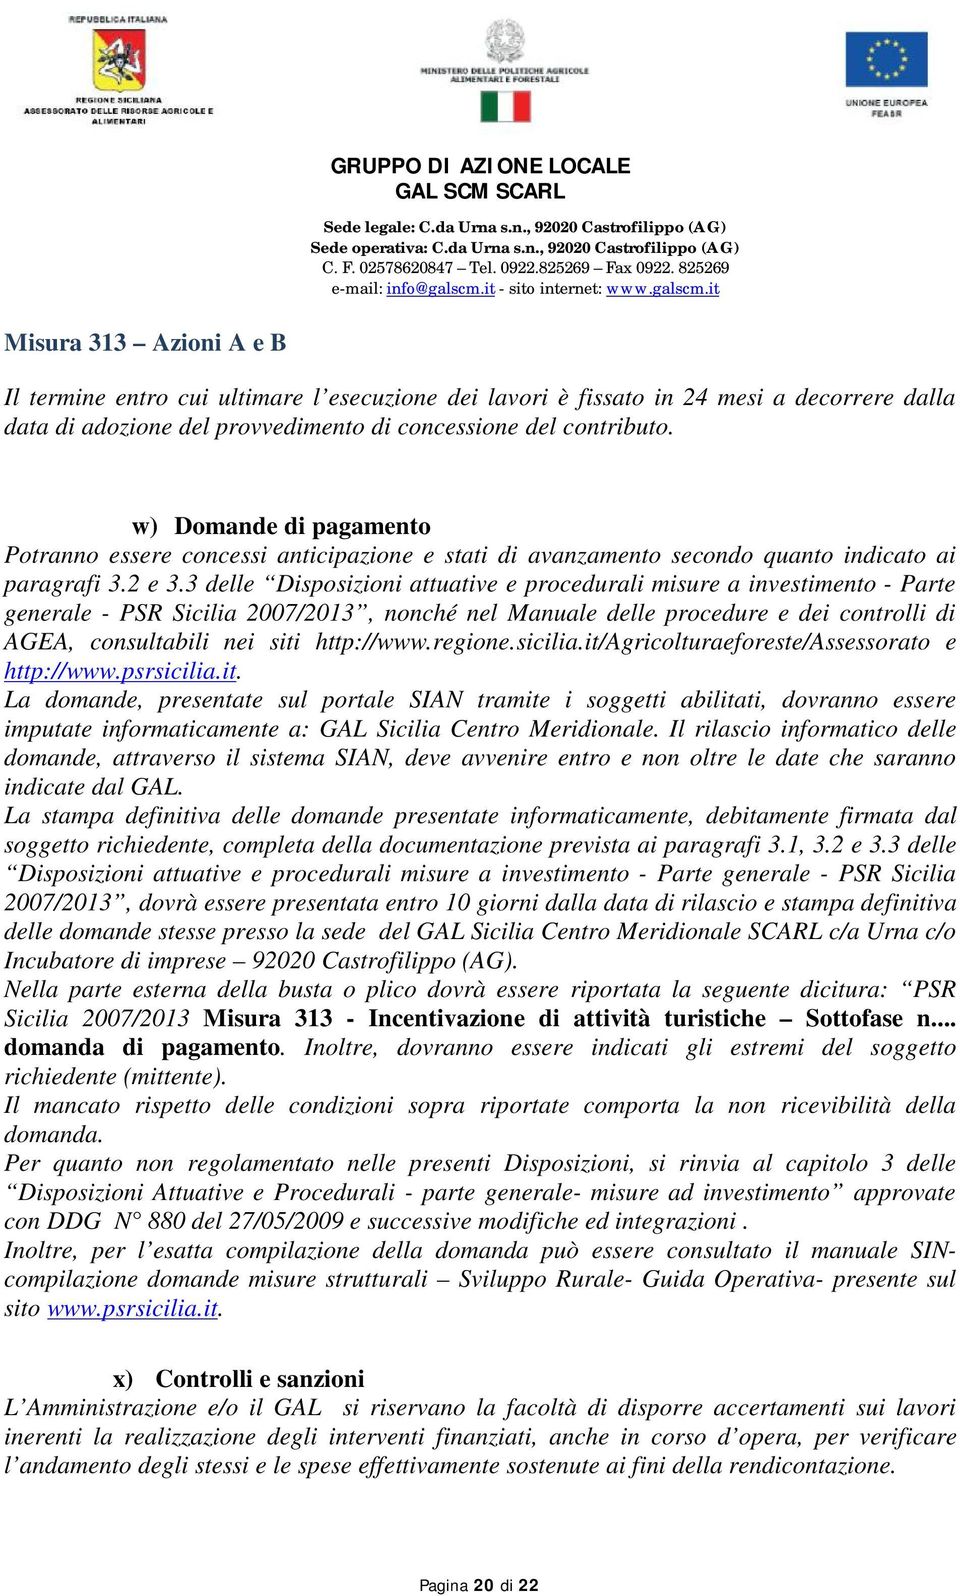 3 delle Disposizioni attuative e procedurali misure a investimento - Parte generale - PSR Sicilia 2007/2013, nonché nel Manuale delle procedure e dei controlli di AGEA, consultabili nei siti